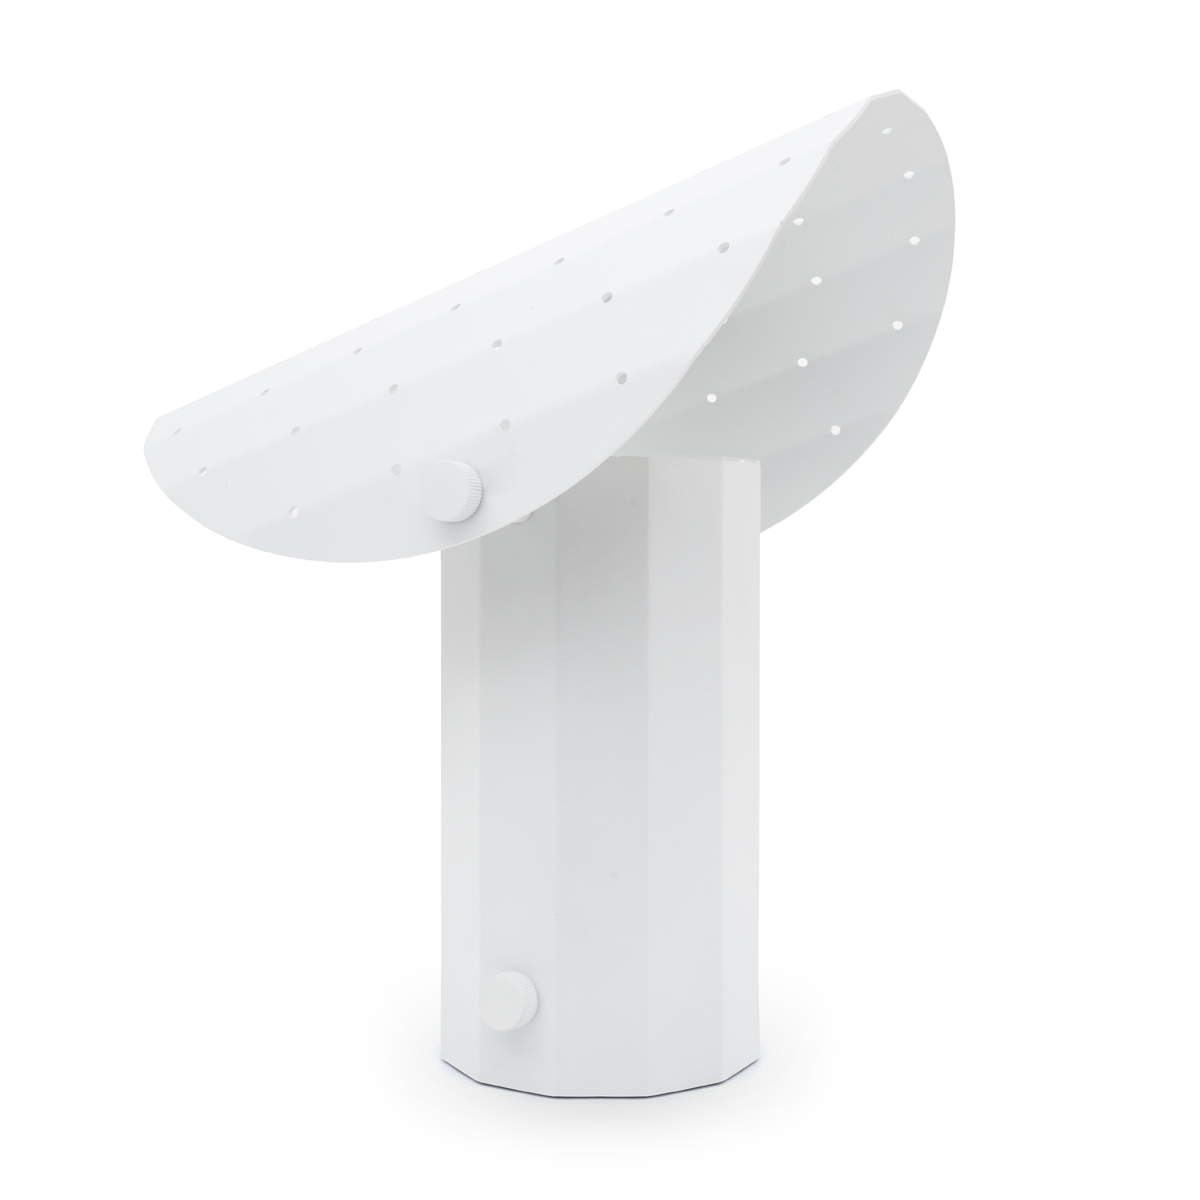 Lampa stołowa APOLIN z perforowanym daszkiem, 30 cm, biała